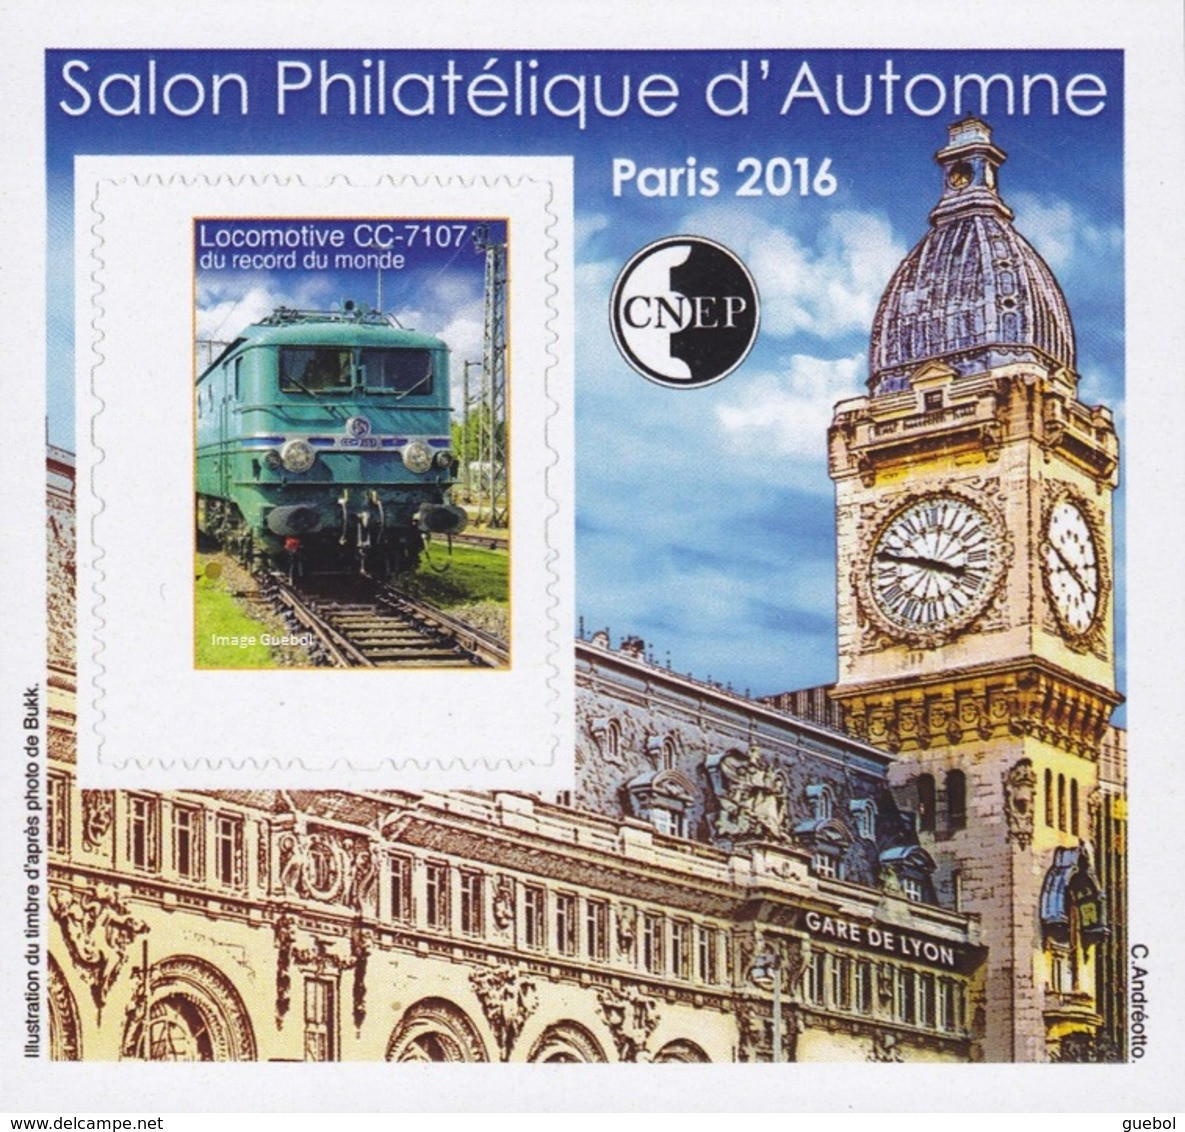 CNEP Le N°  73 A De 2016 - Bloc Non Dentelé - Salon D'automne à PARIS - Locomotive CC-71076 - Gare De Lyon - CNEP